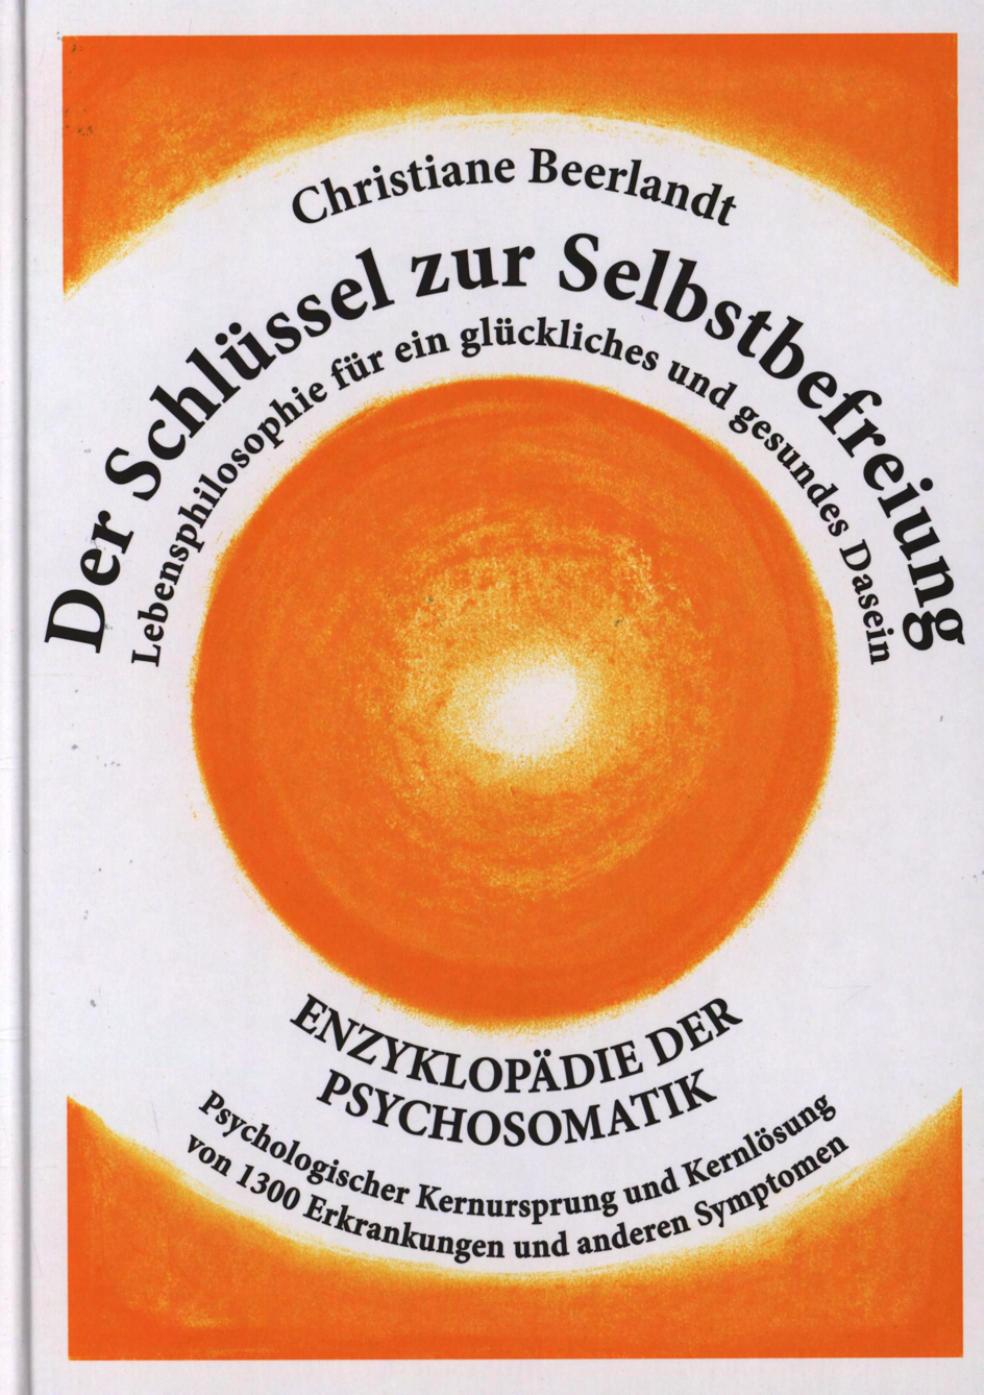 Der Schlüssel zur Selbstbefreiung: Enzyklopädie der Psychosomatik - Psychologischer Kernursprung und Kernlösung von 1300 Erkrankungen und anderen Symptomen - Lebensphilosophie für ein glückliches und gesundes Dasein